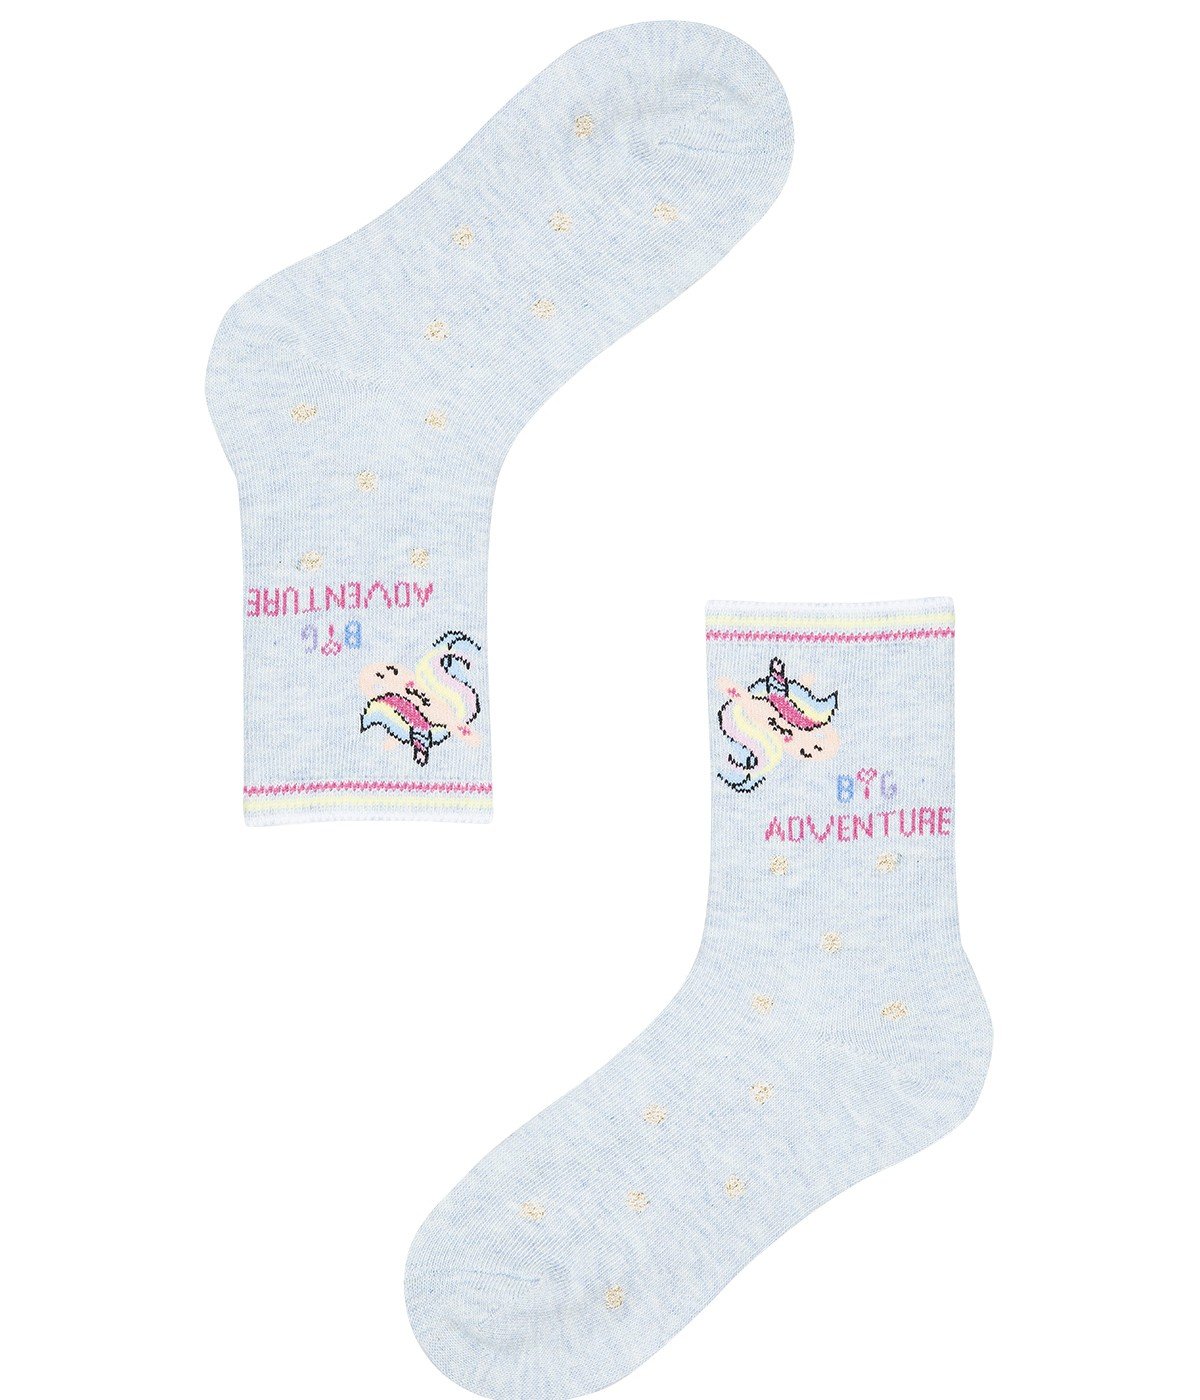 Girl Big Adventure 3In1 Socks